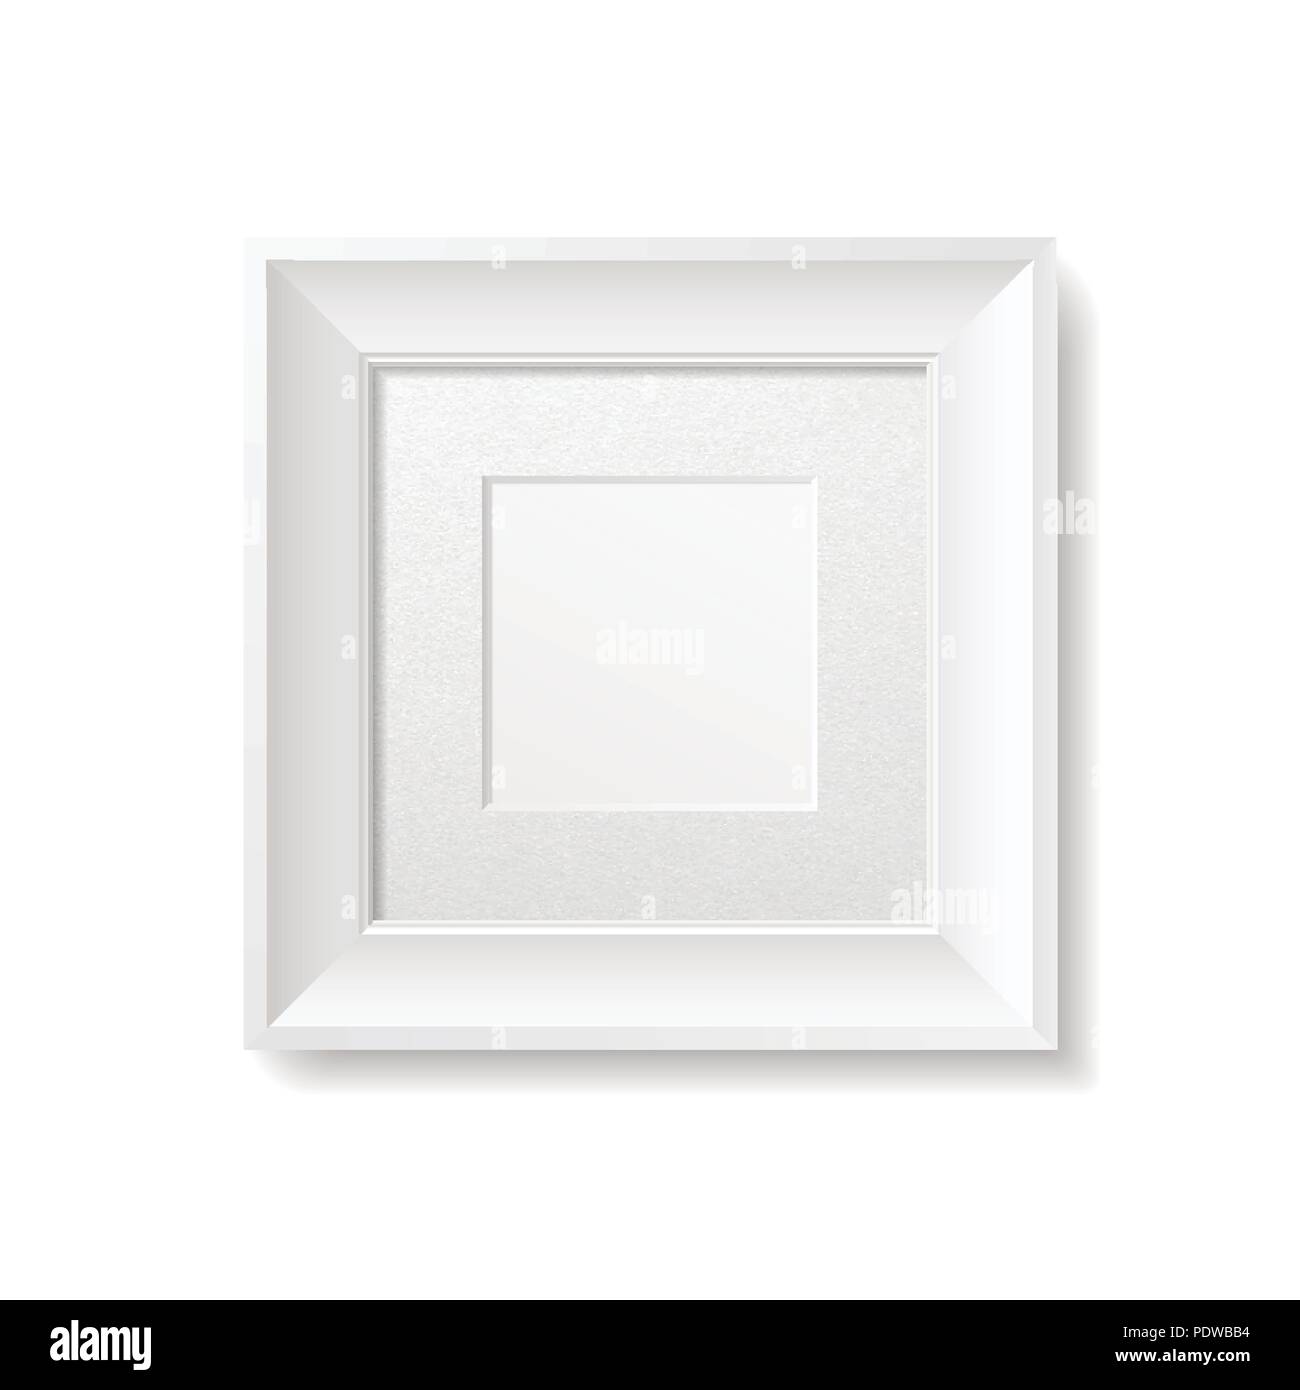 Marco de fotos 15x20 cm con passepartout blanco